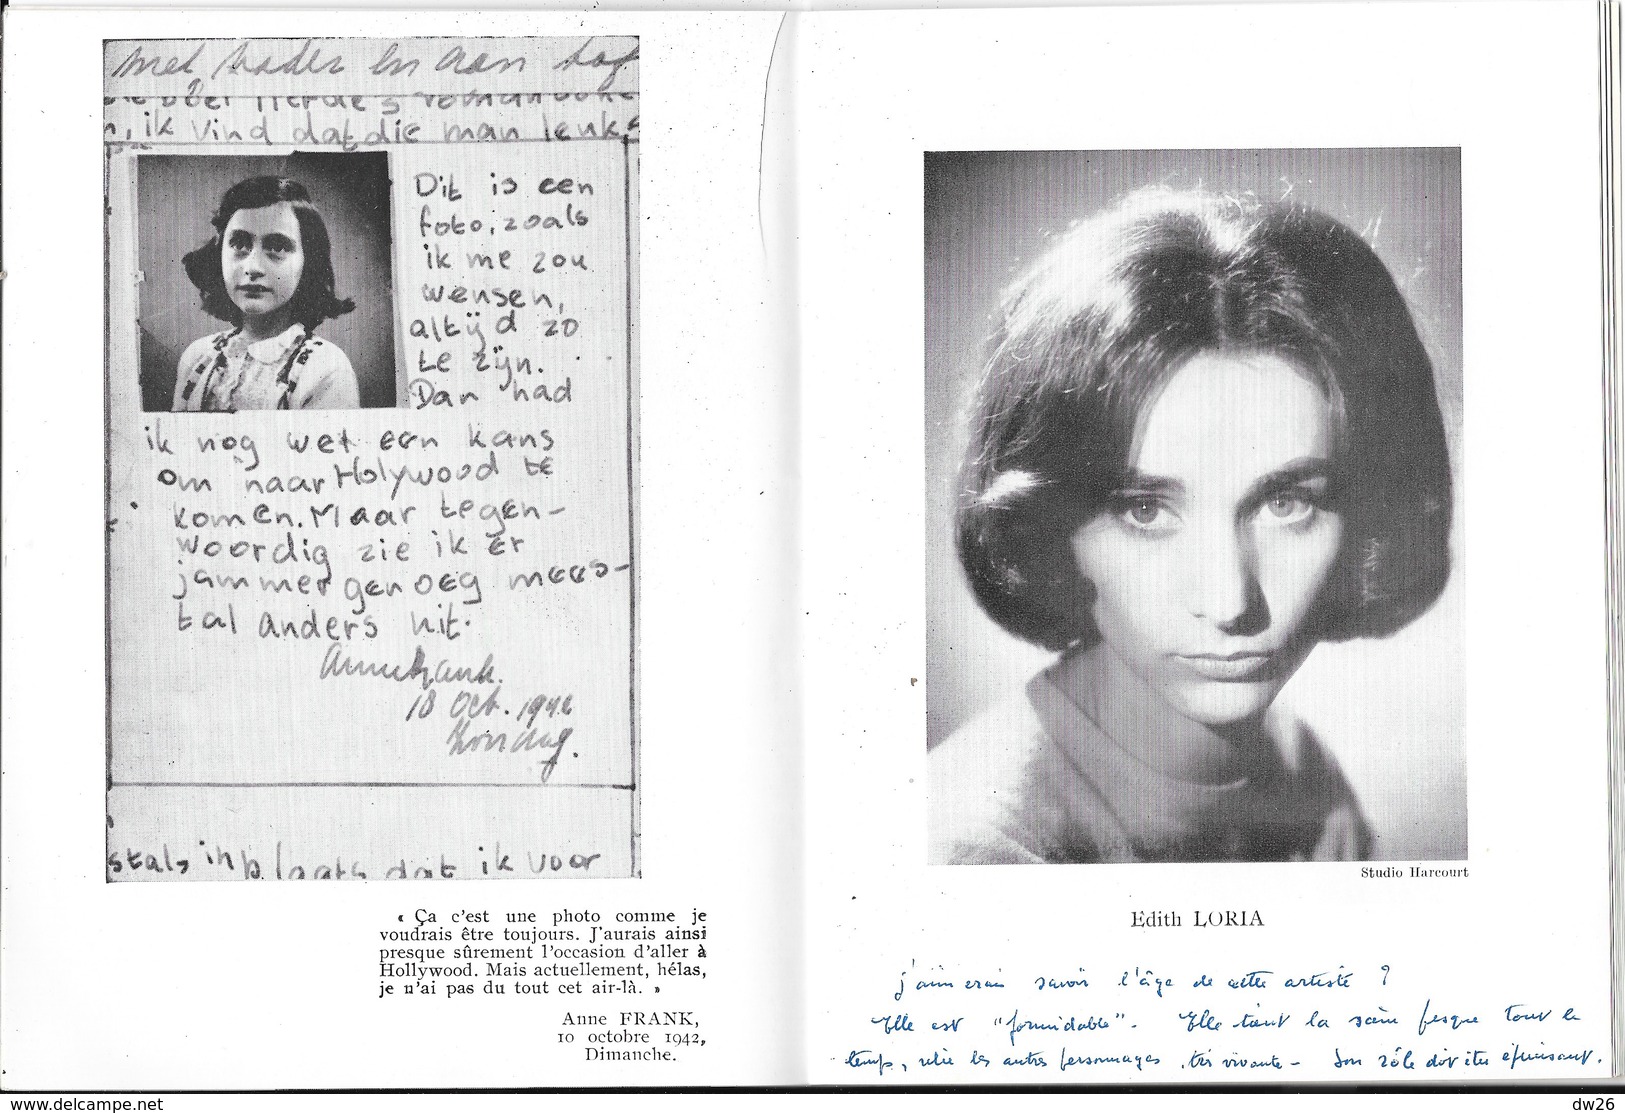 Programme Théâtre Montparnasse Gaston Baty - Pièce Le Journal D'Anne Frank Avec Michel Etcheverry 1958 - Programma's